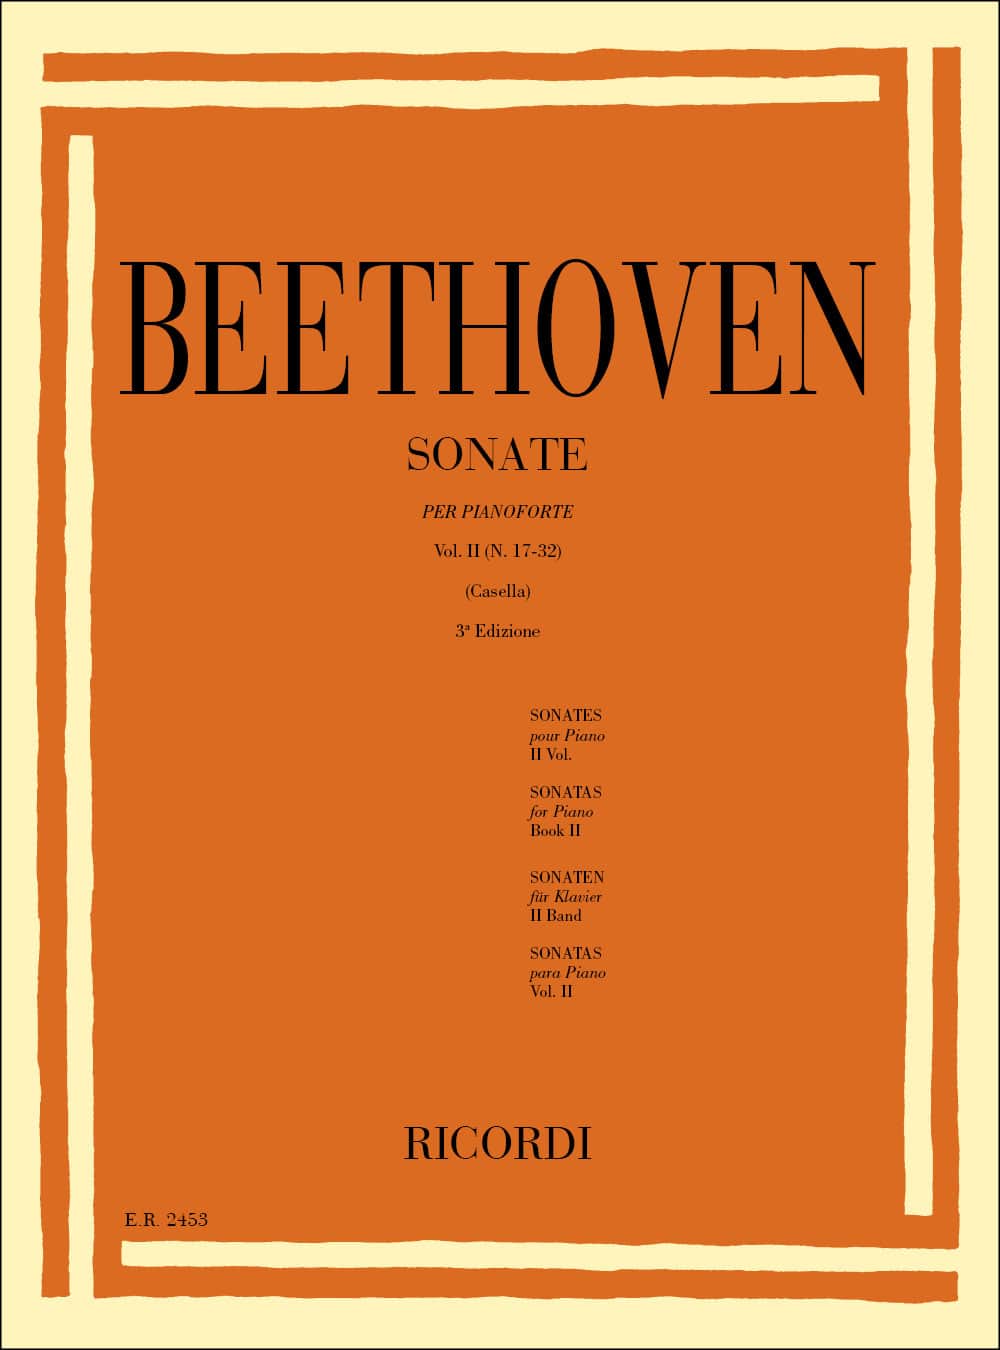 RICORDI BEETHOVEN L.V. - 32 SONATE PER PIANOFORTE VOL 2 (17-32) - PIANO